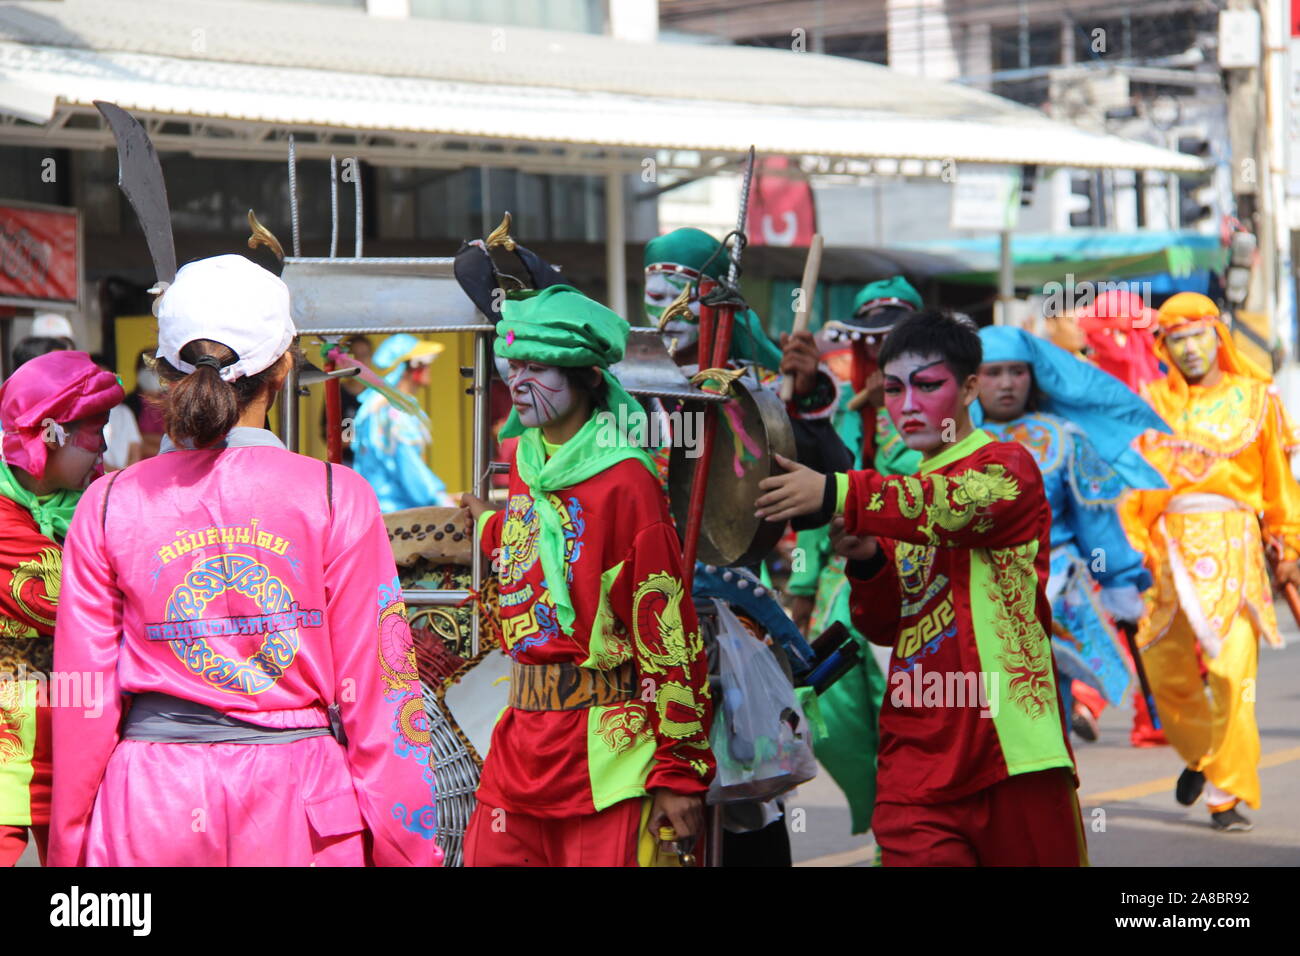 Danse du dragon chinois Roi Et procession, Thaïlande Banque D'Images